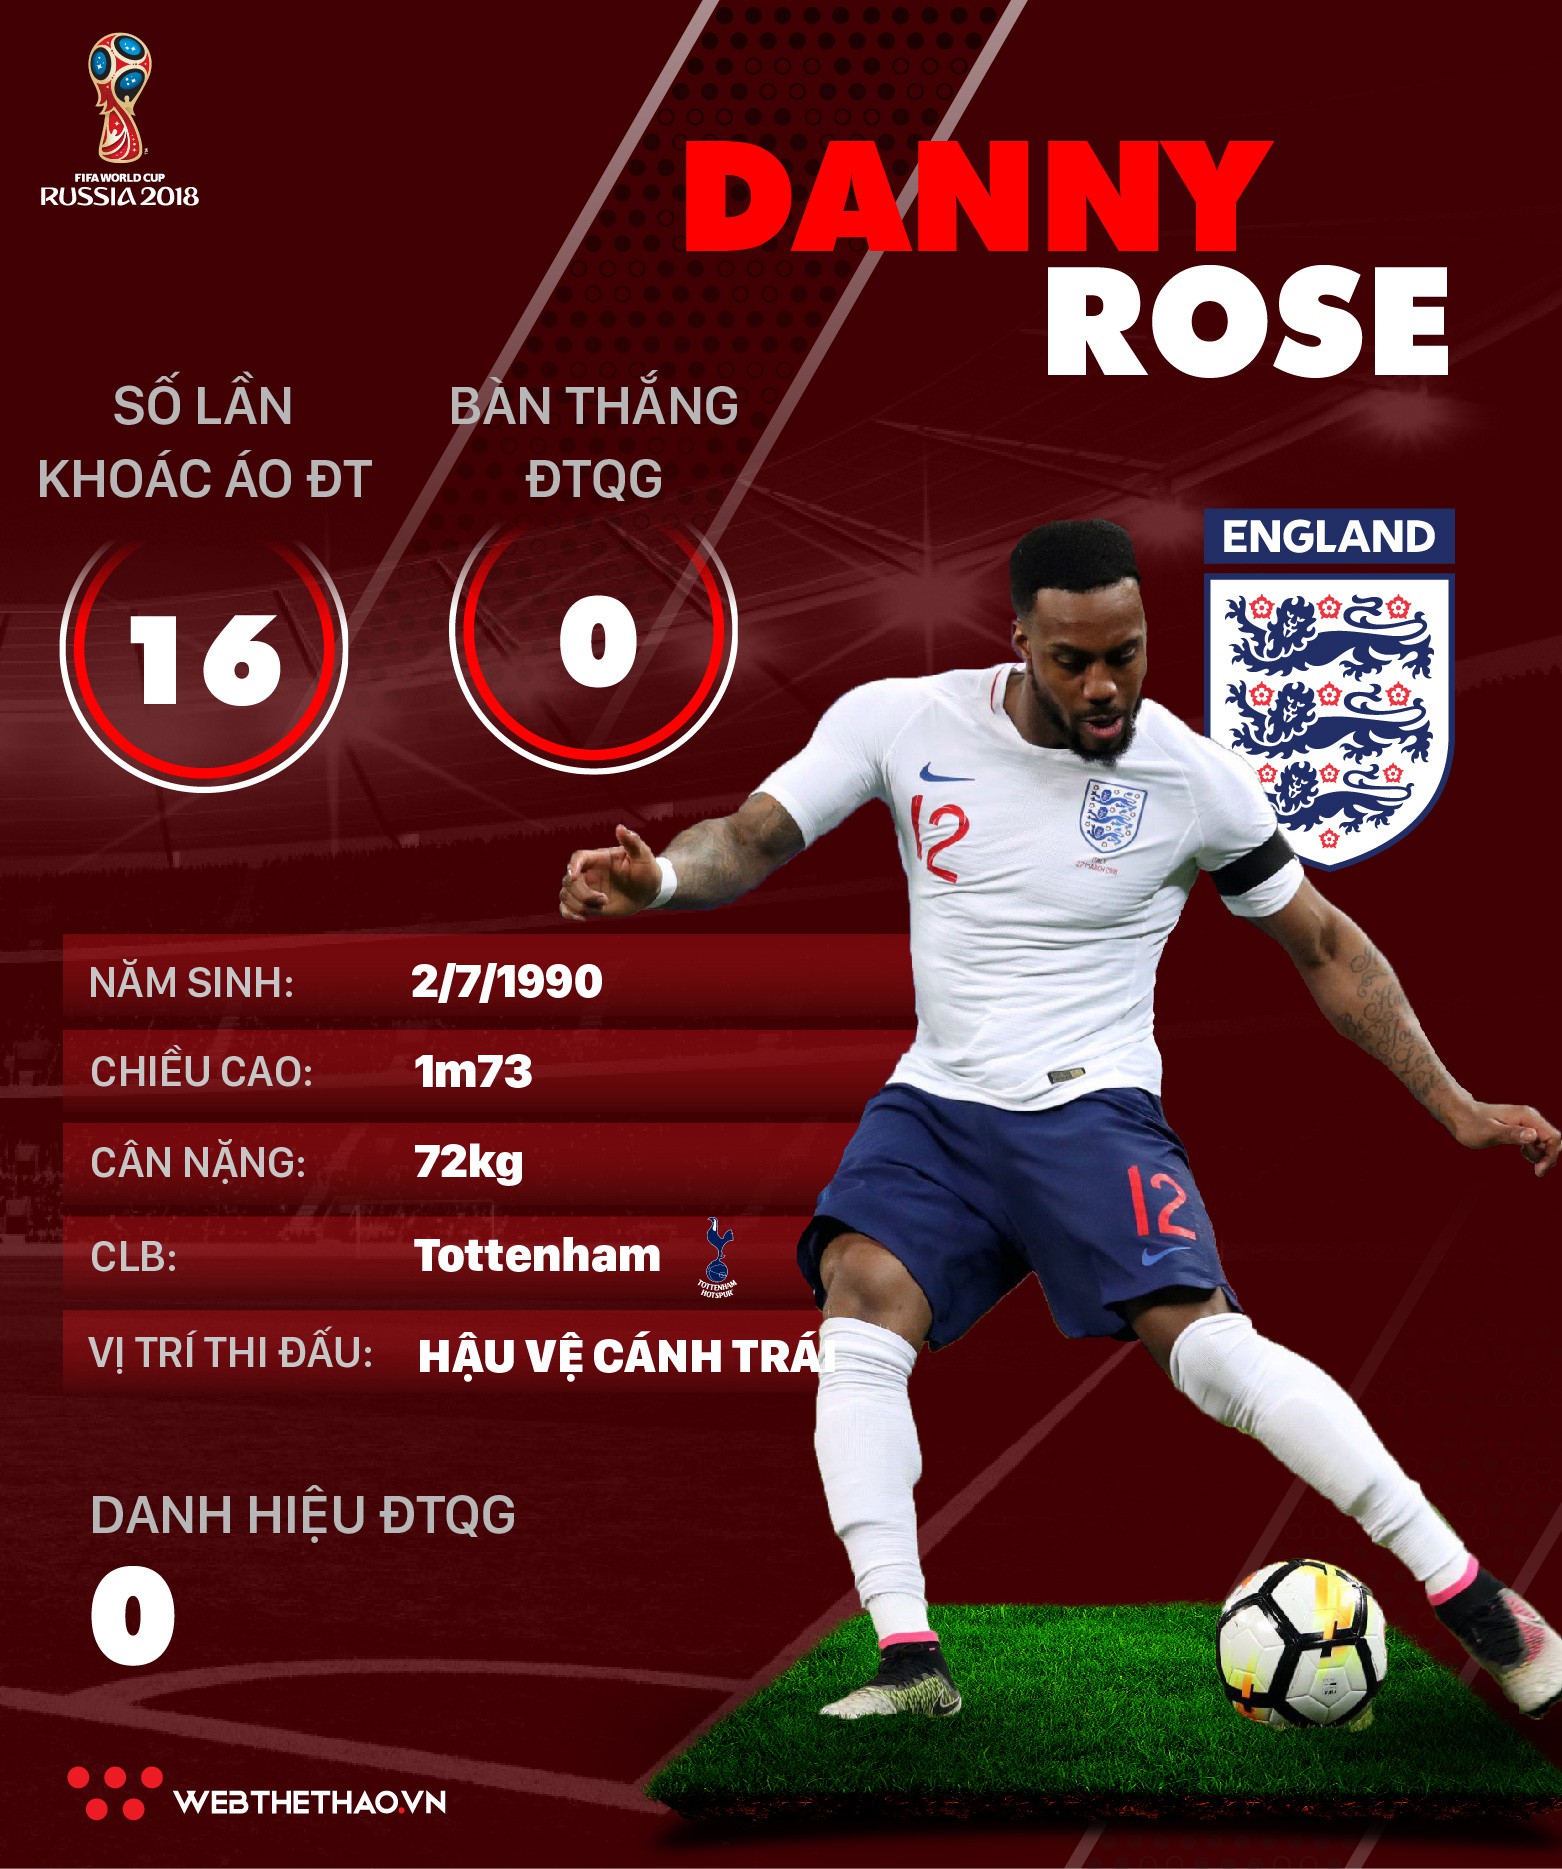 Thông tin cầu thủ của Danny Rose ĐT Anh dự World Cup 2018